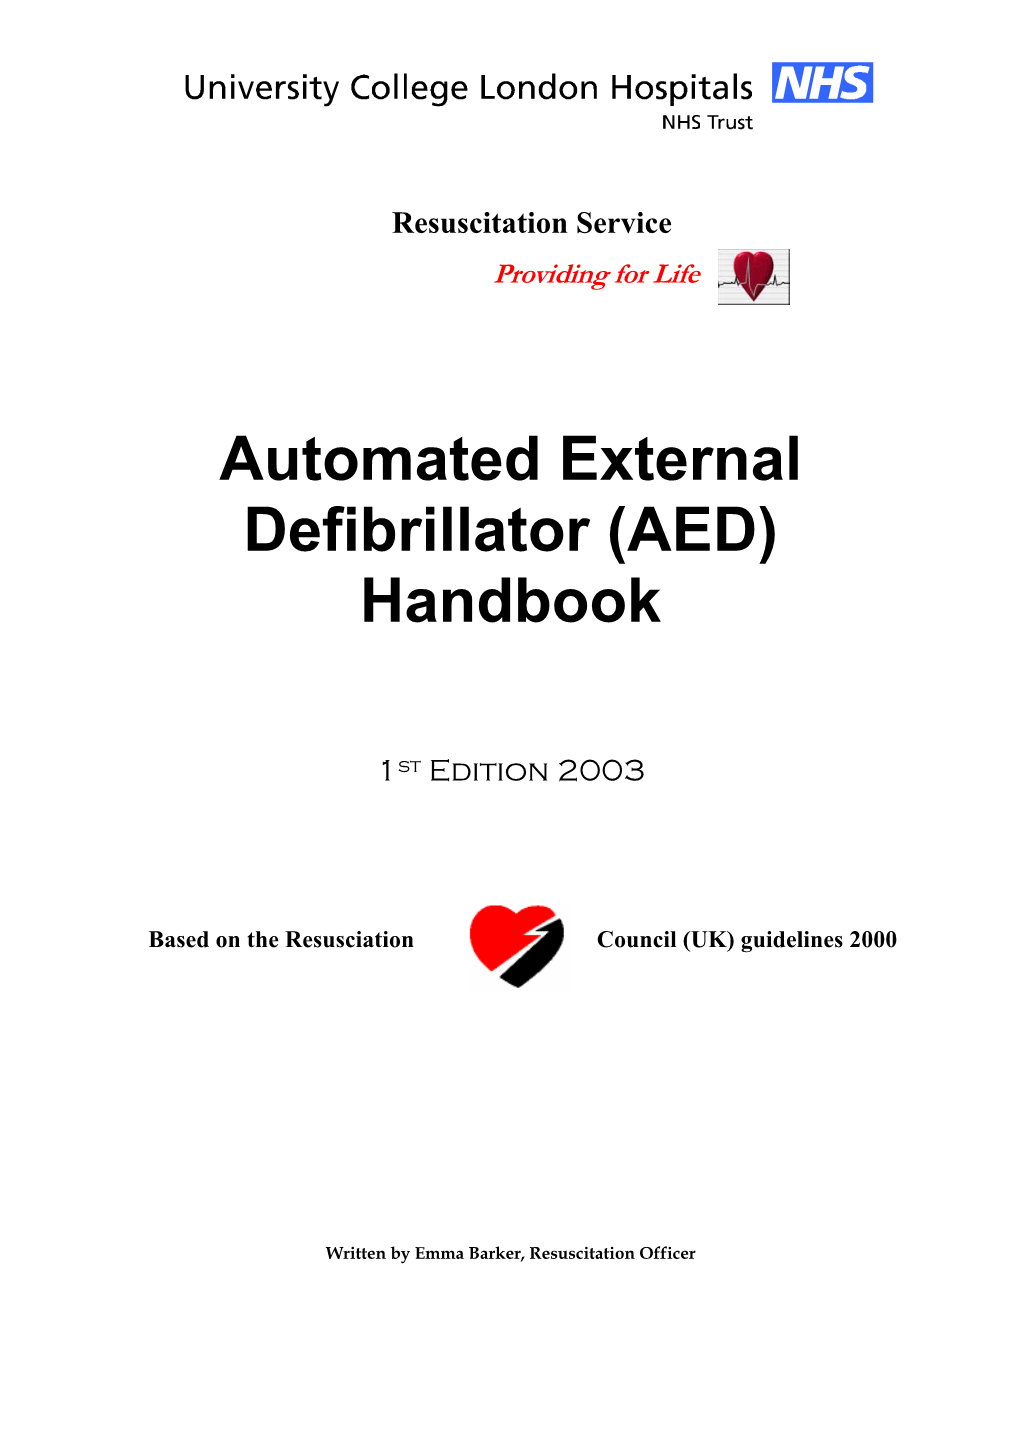 AED) Handbook